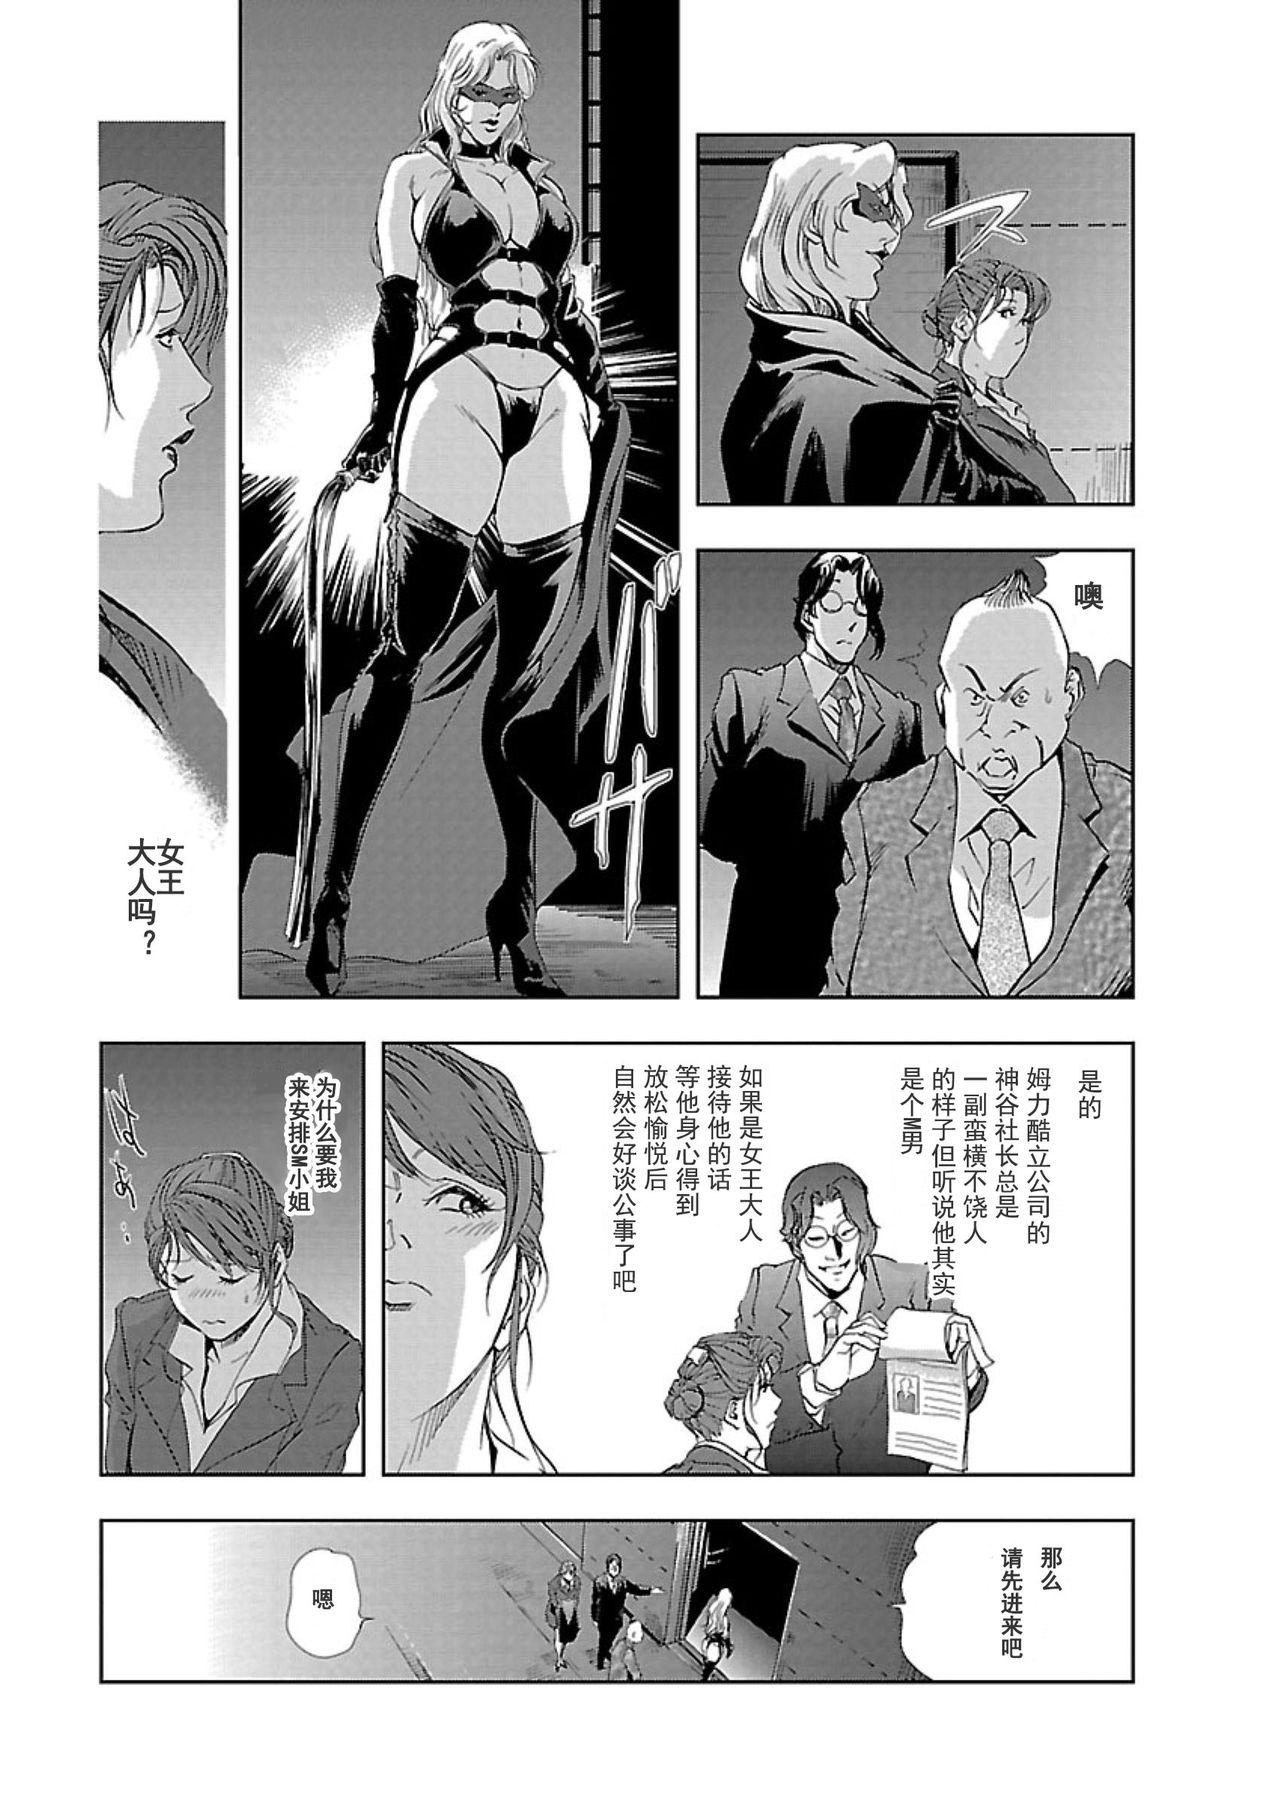 【不可视汉化】[Misaki Yukihiro] Nikuhisyo Yukiko chapter 02  [Digital] 10